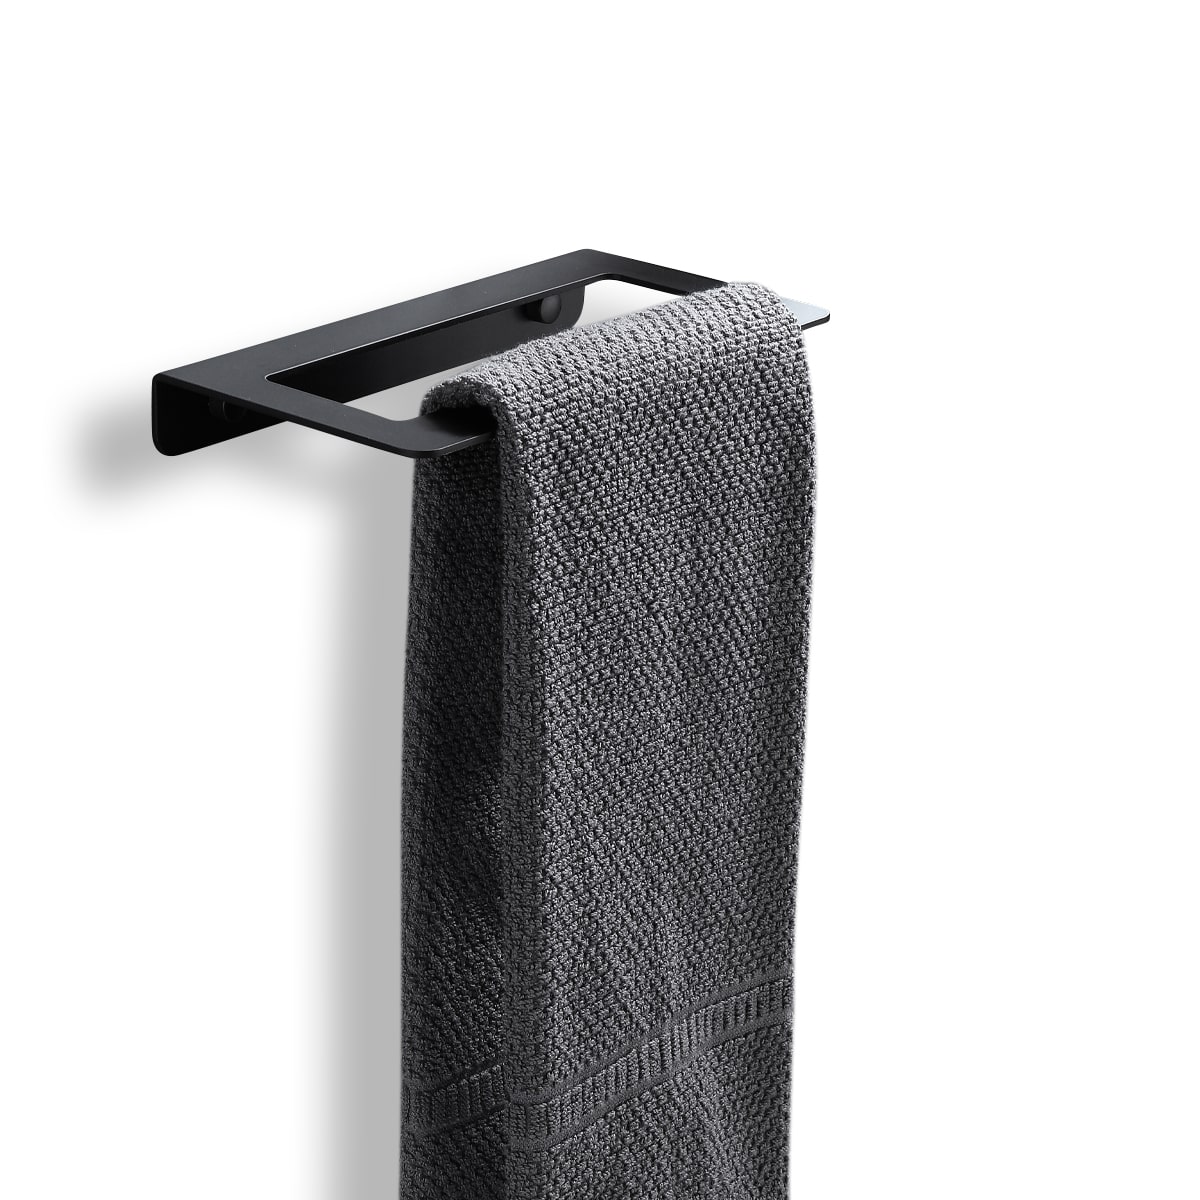 Handdoekrek_zwart_aluminium